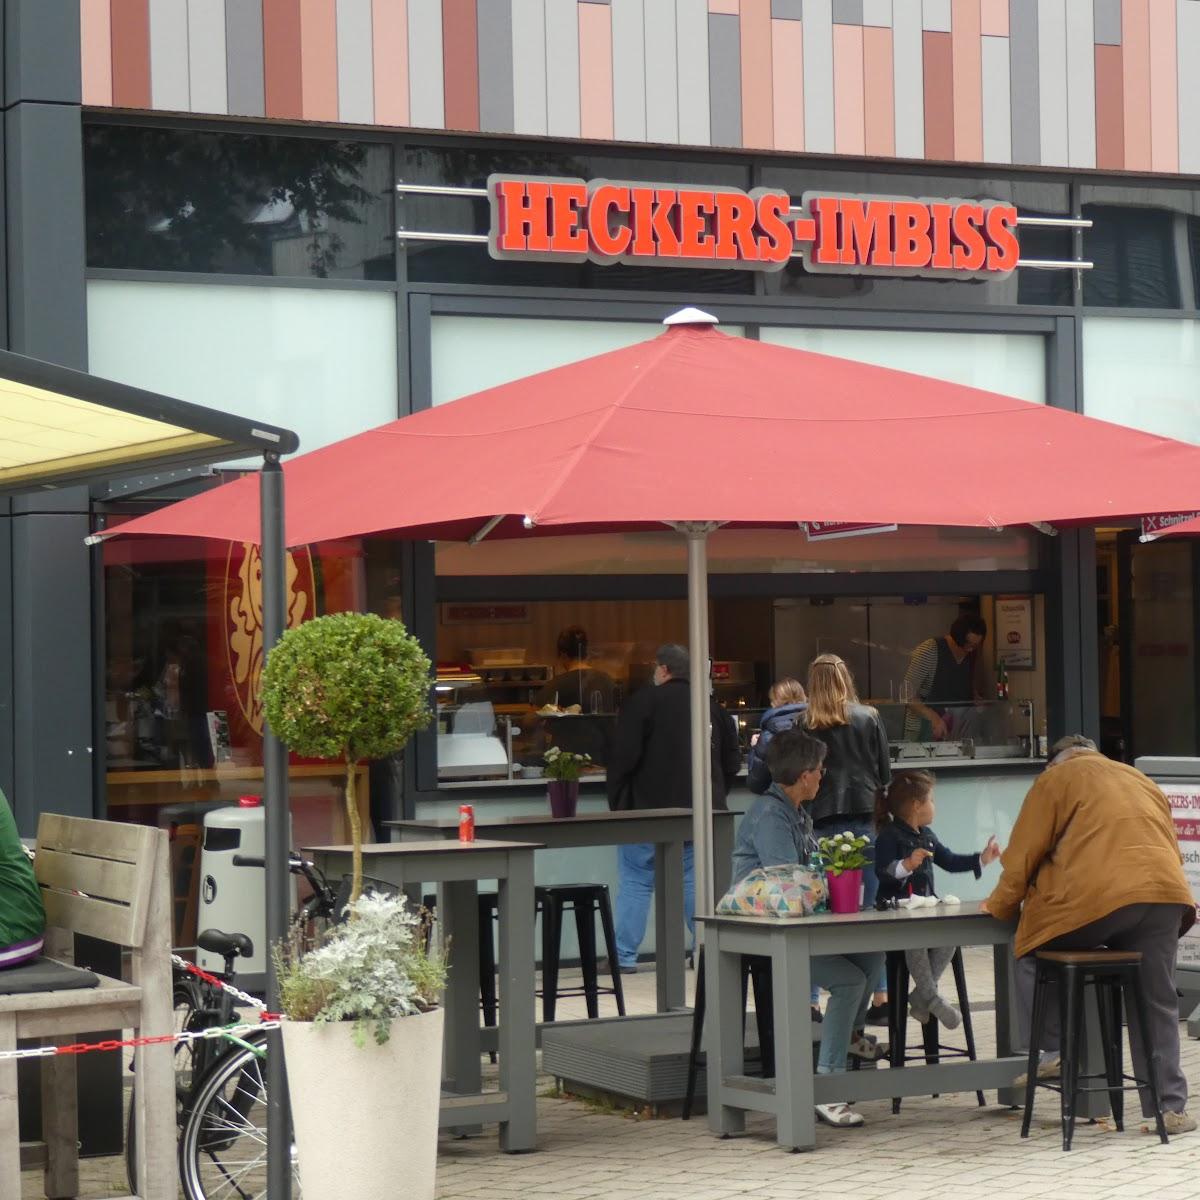 Restaurant "Heckers-Imbiss" in Höxter